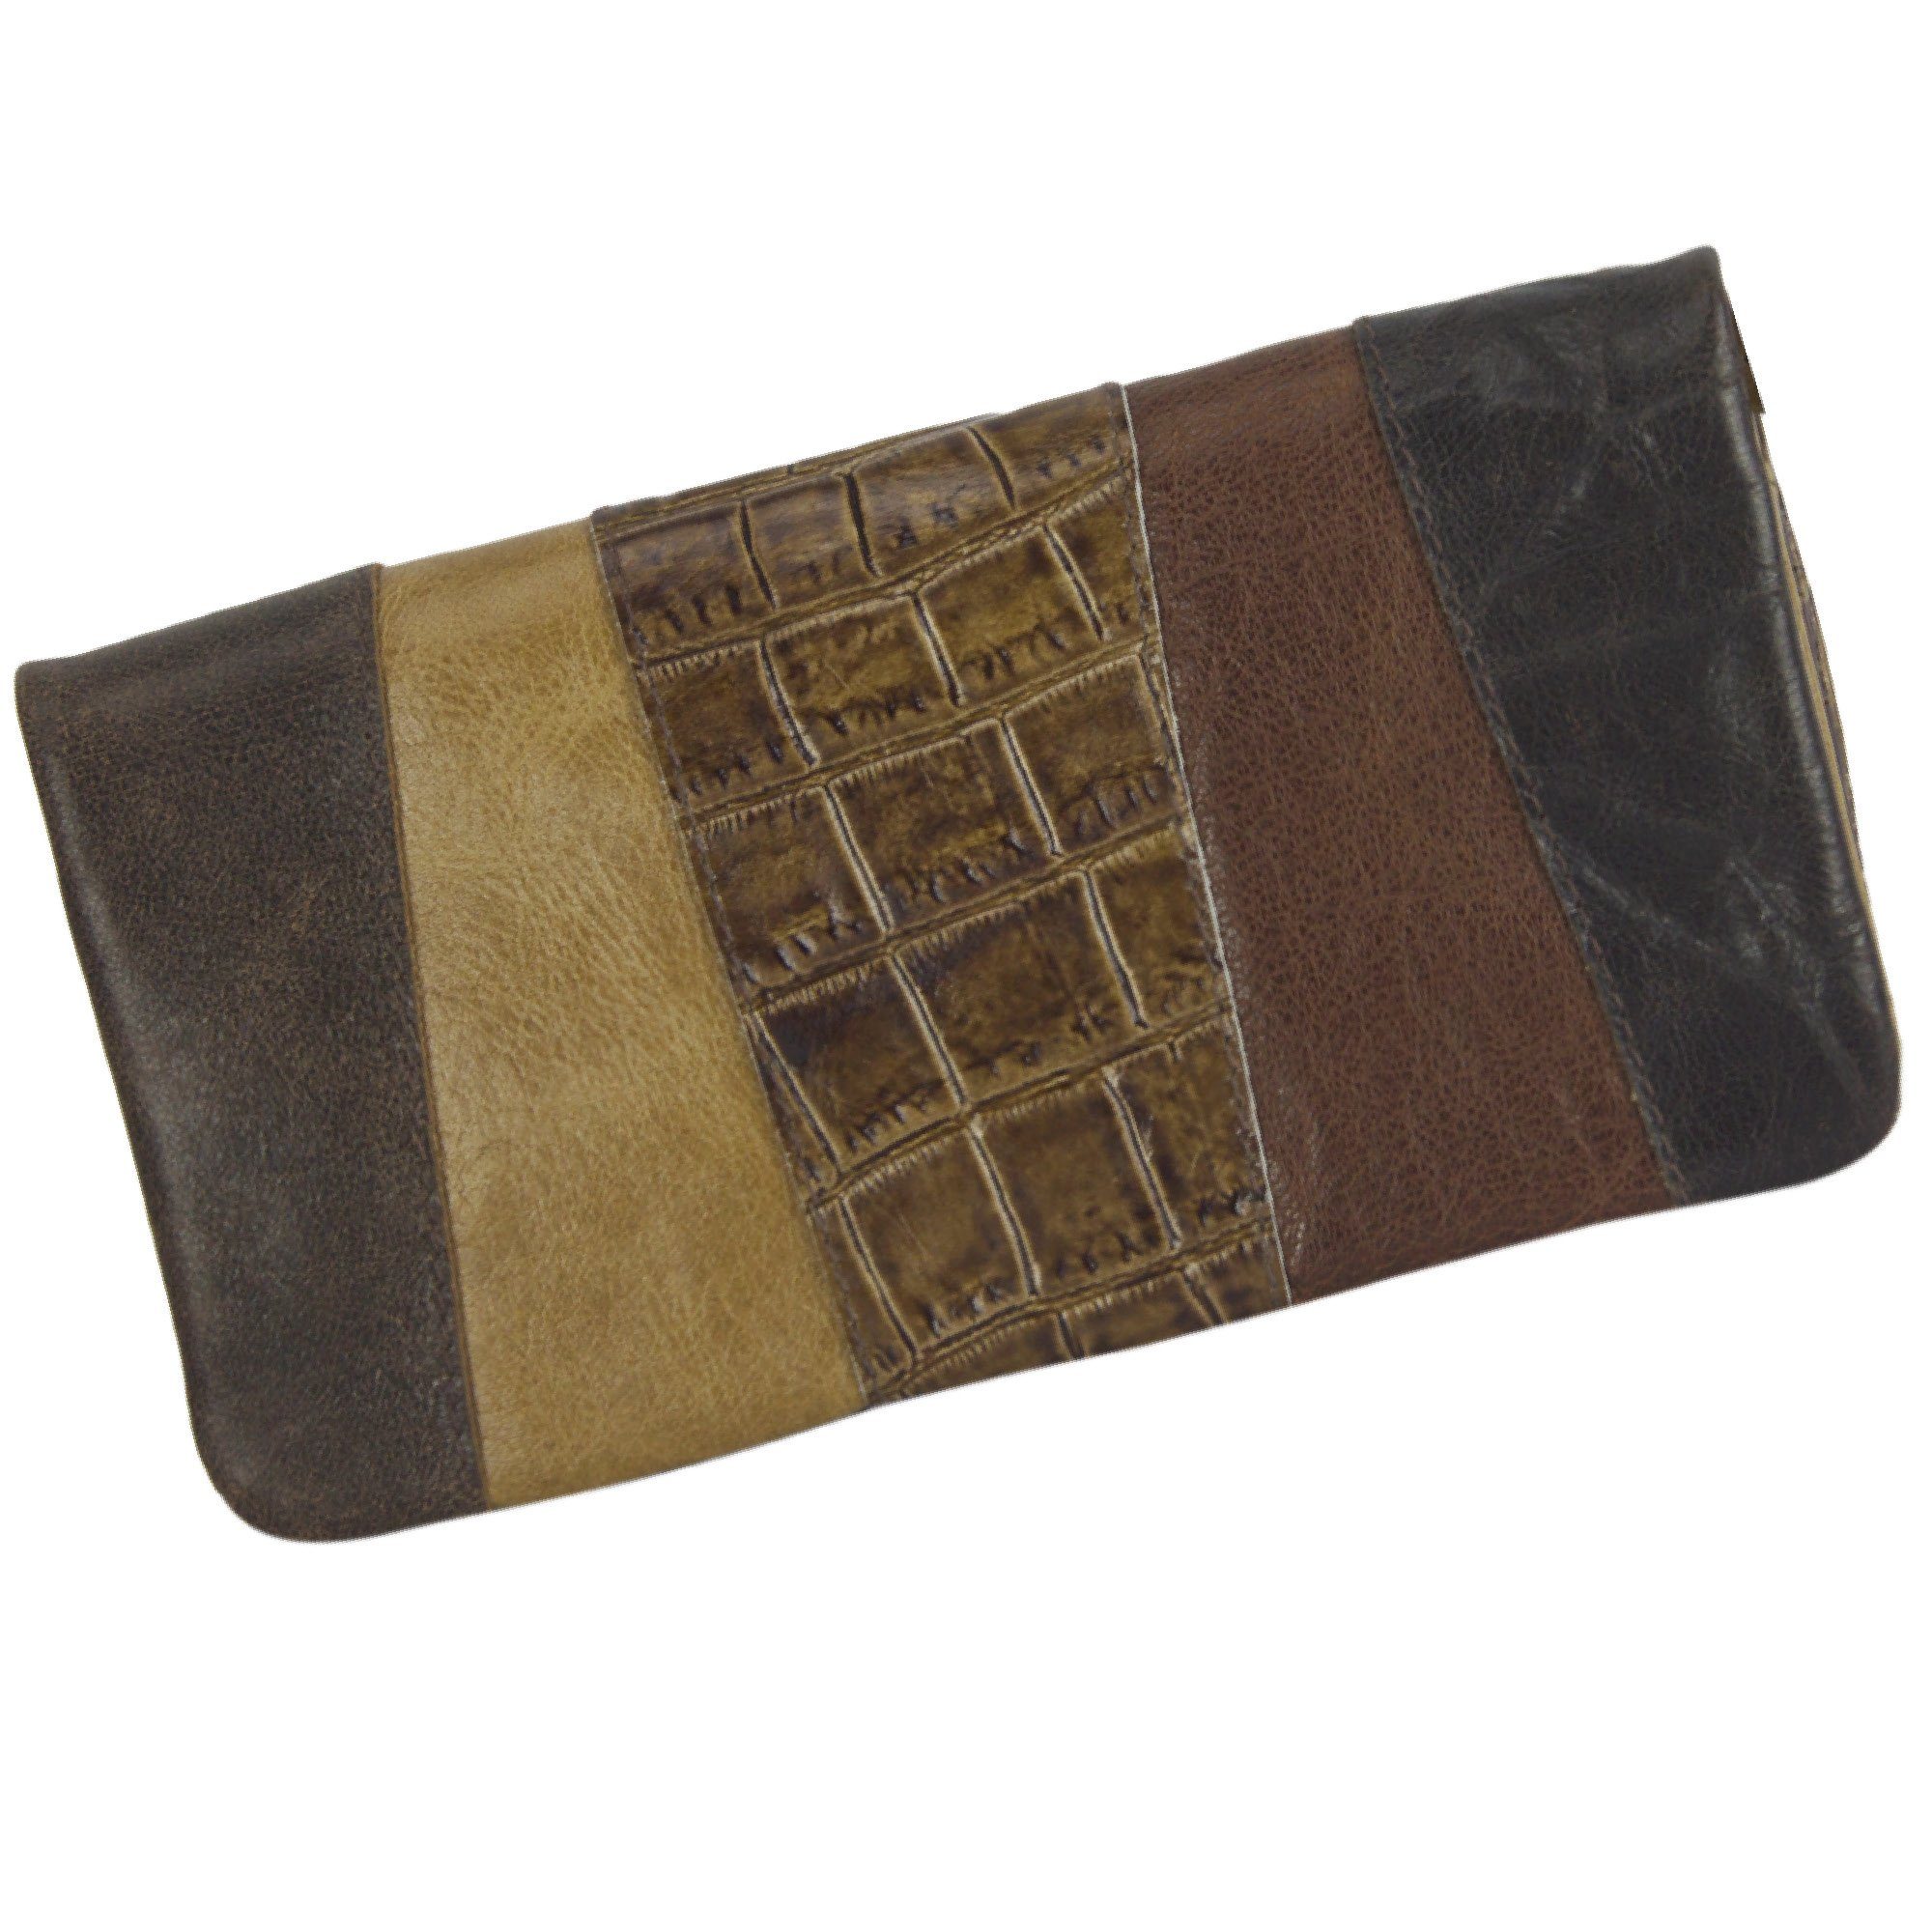 Sunsa Geldbörse Leder Geldbeutel große Brieftasche Portemonnaie, echt Leder, mit RFID-Schutz, Vintage Style, aus recycelten Lederresten hellbraun | Geldbörsen